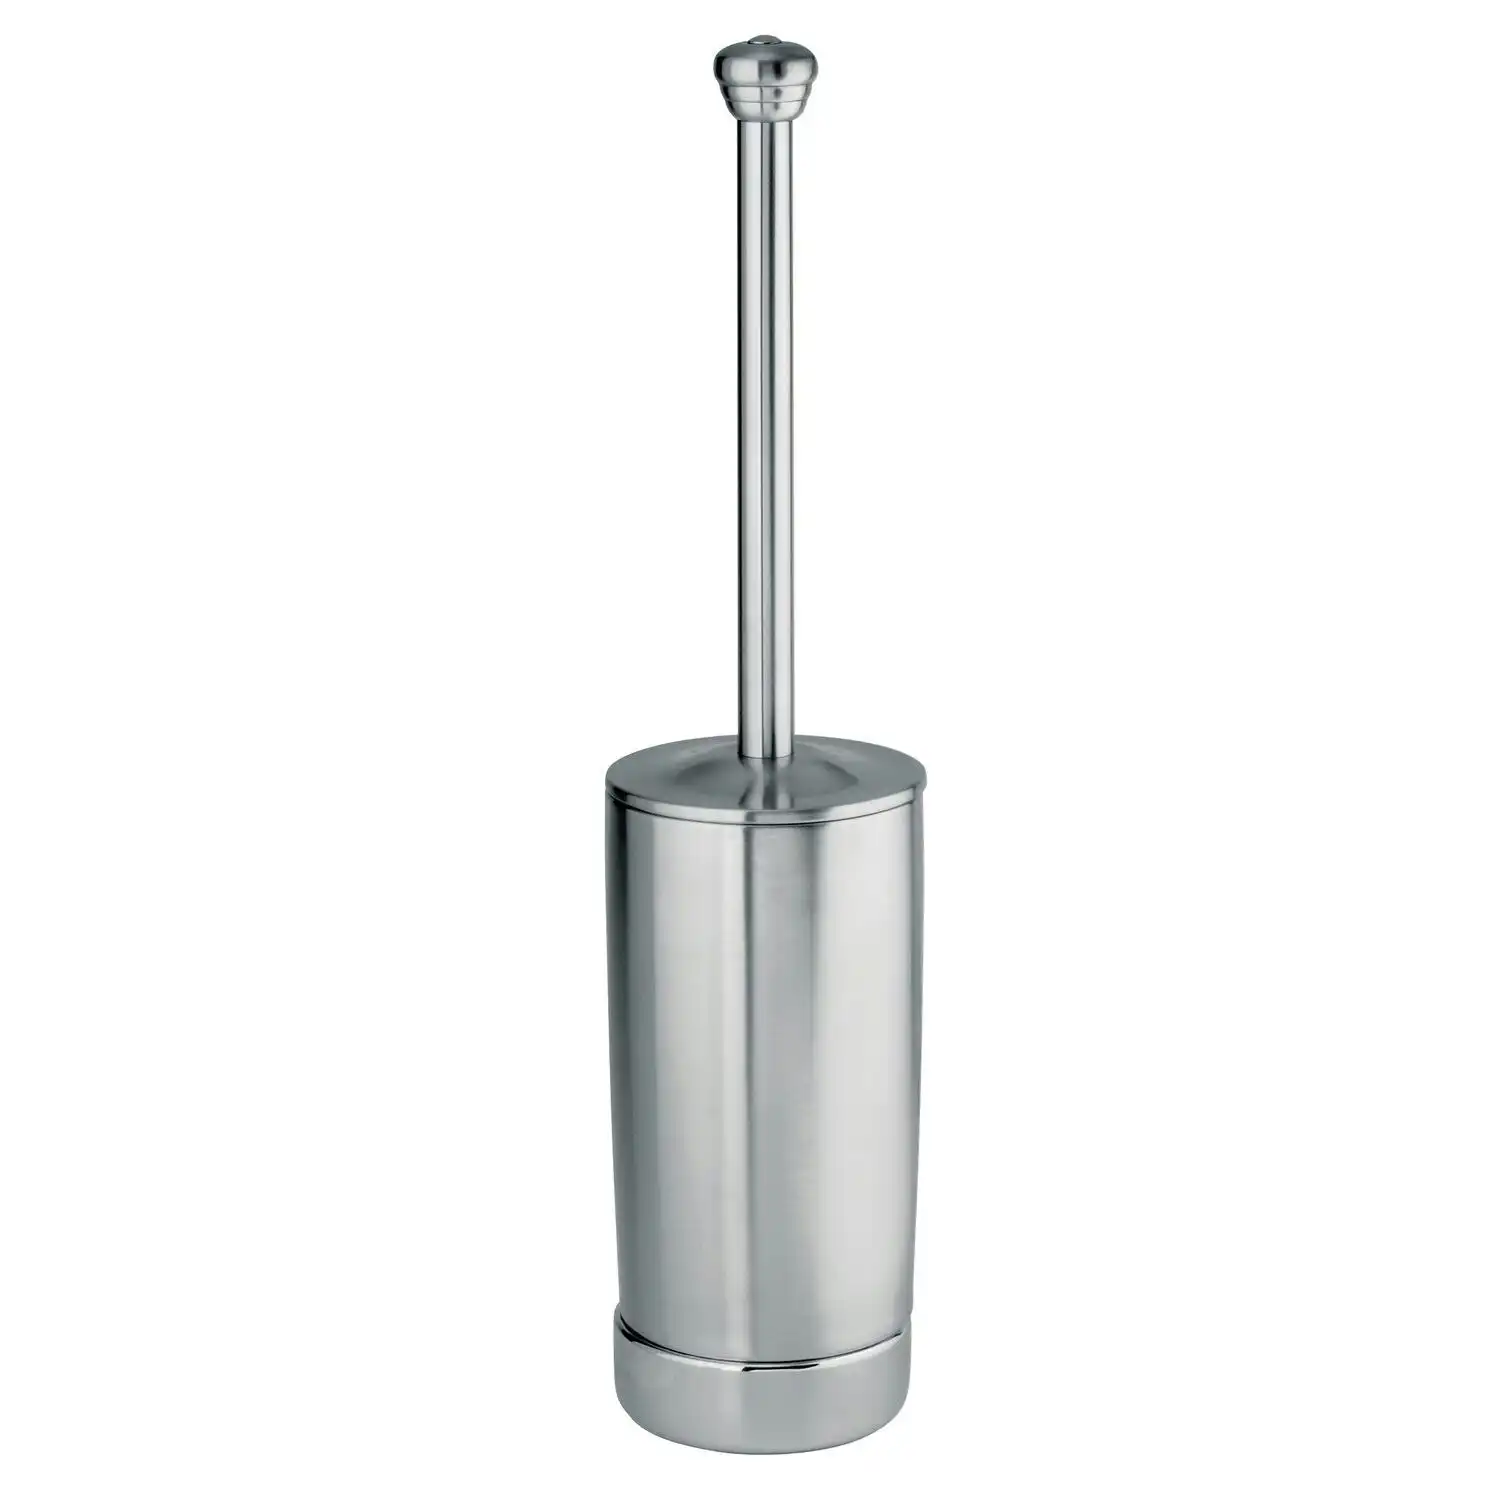 Idesign York Metal Stainless Steel Bowl Bathroom Toilet Brush w/Holder 49.4cm